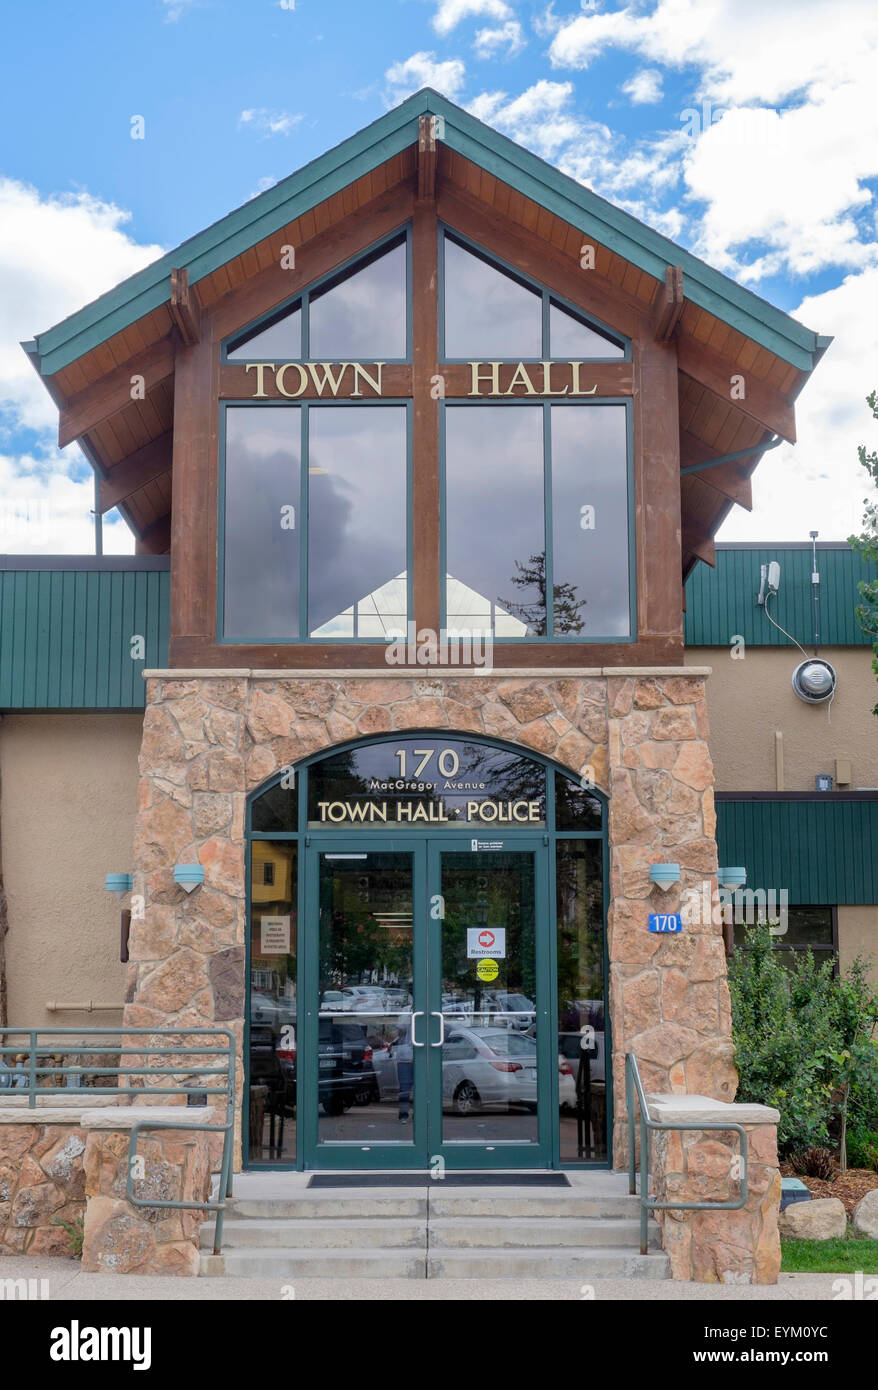 Estes Park Colorado town hall building entrance Stock Photo